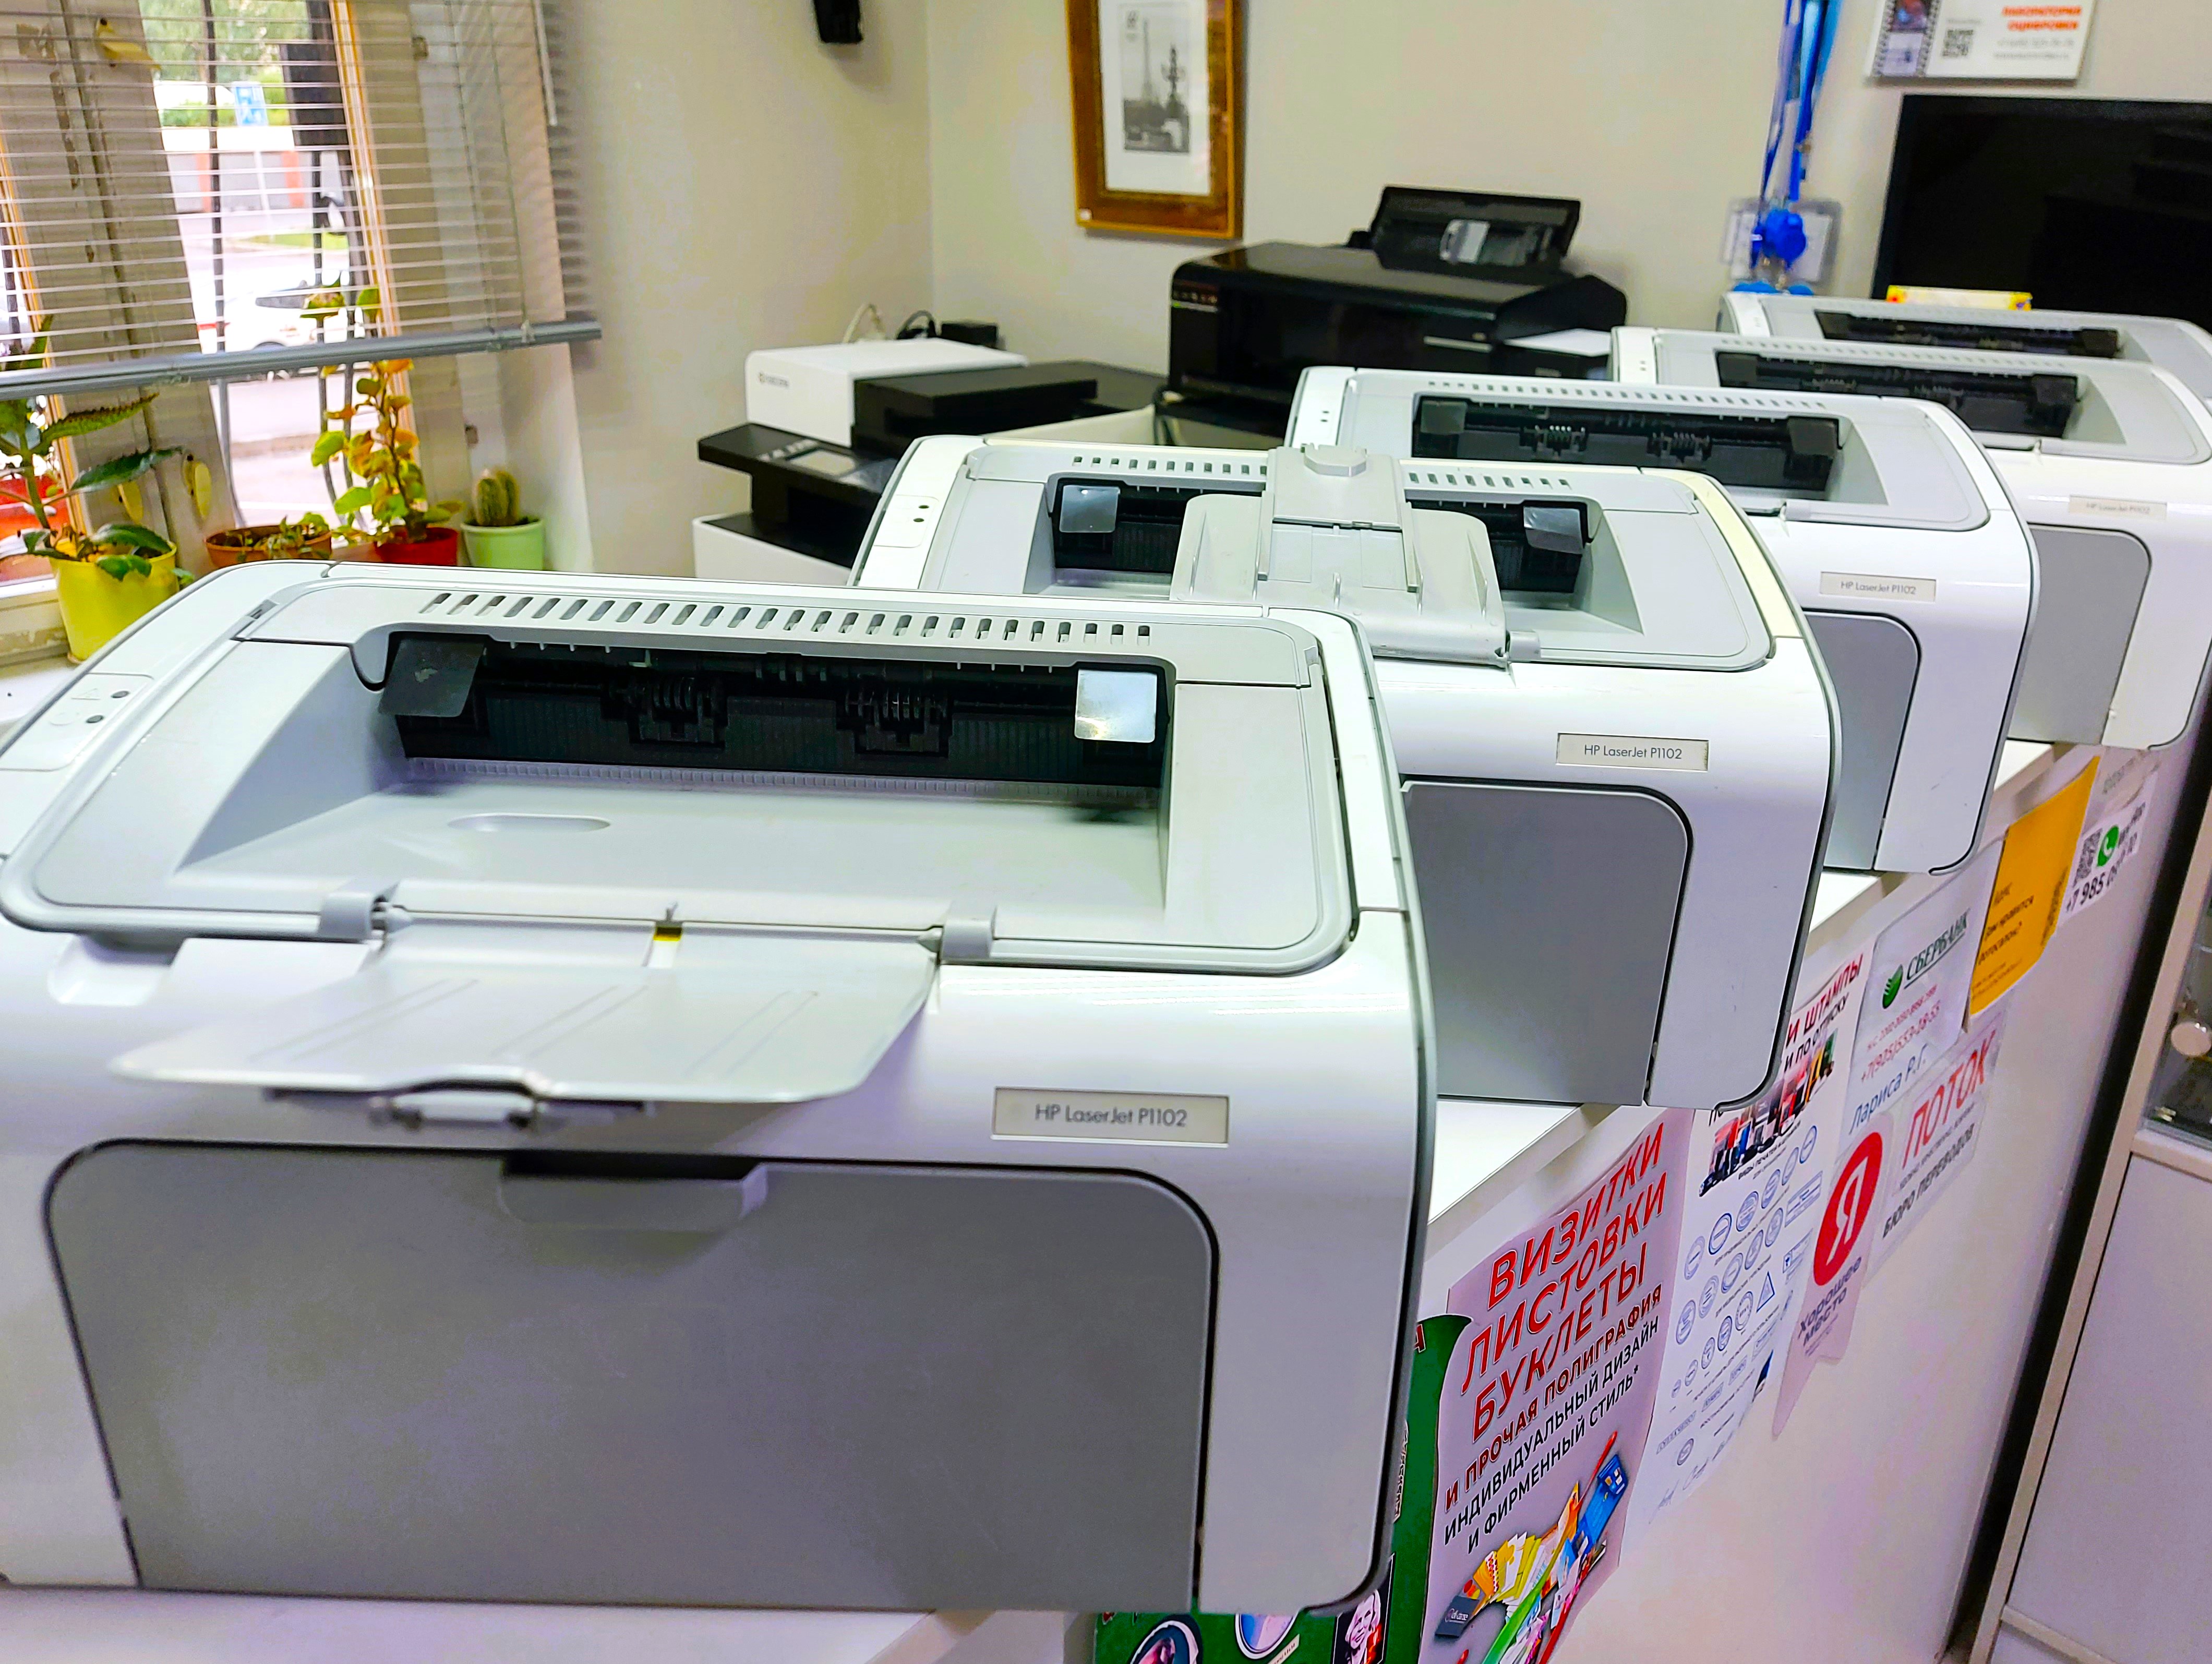 Принтеры лазерные б/у в отличном состоянии (HP, Canon, Xerox, Samsung).
Есть аппараты с минимальным пробегом!